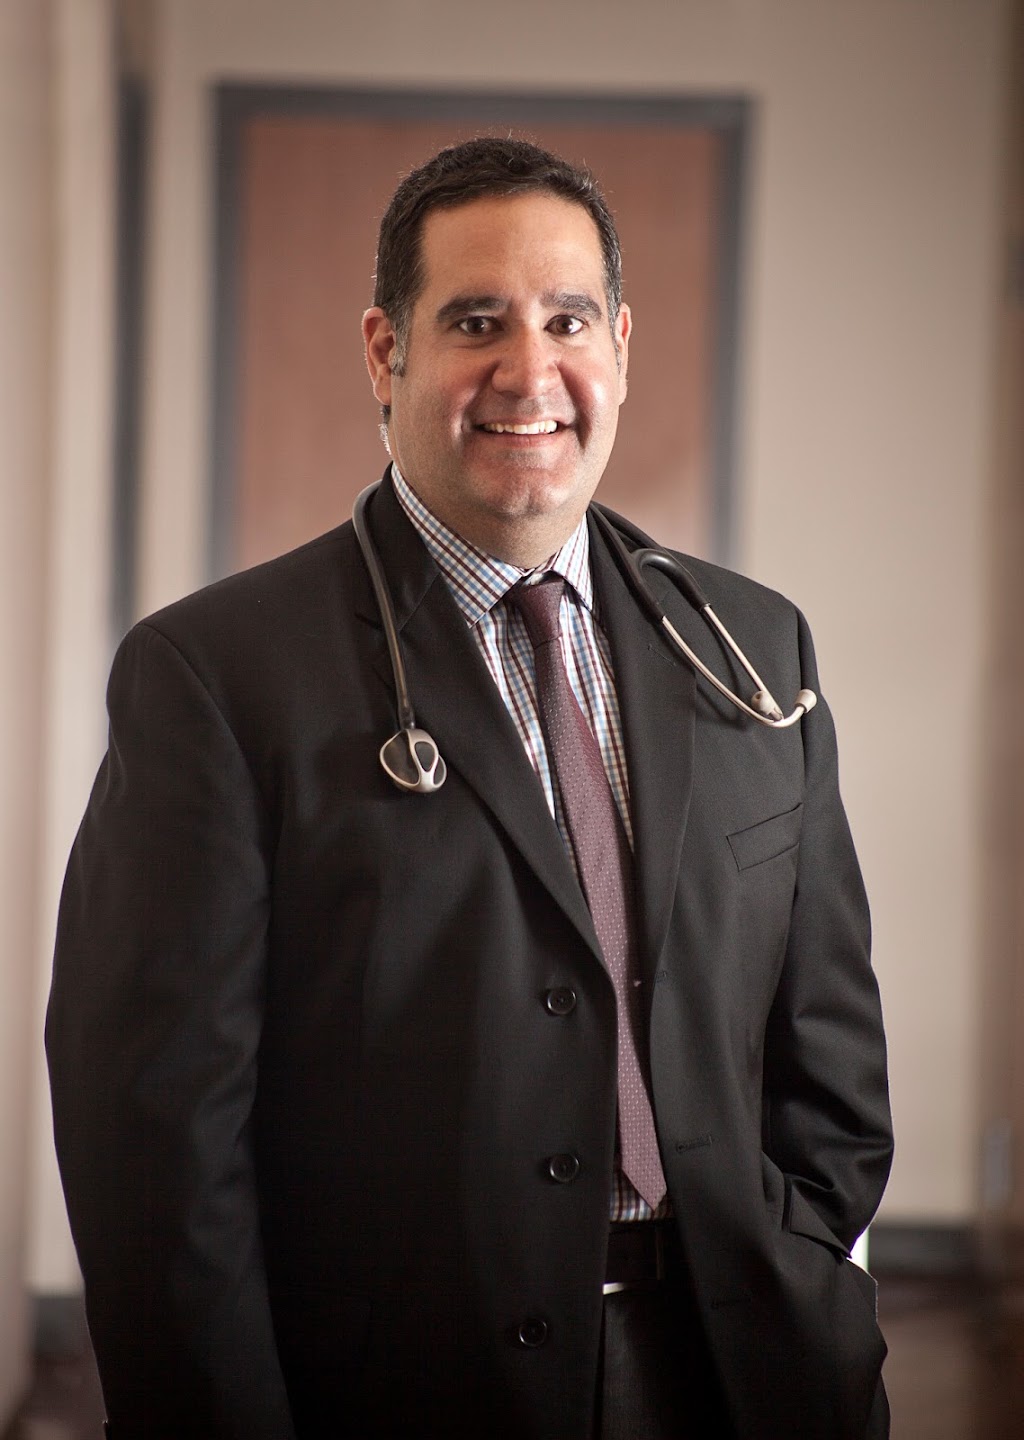 Dr. Alejandro Del Valle, DO - Privamedis Concierge Medicine | 4308 Alton Rd #880, Miami Beach, FL 33140 | Phone: (305) 604-2888